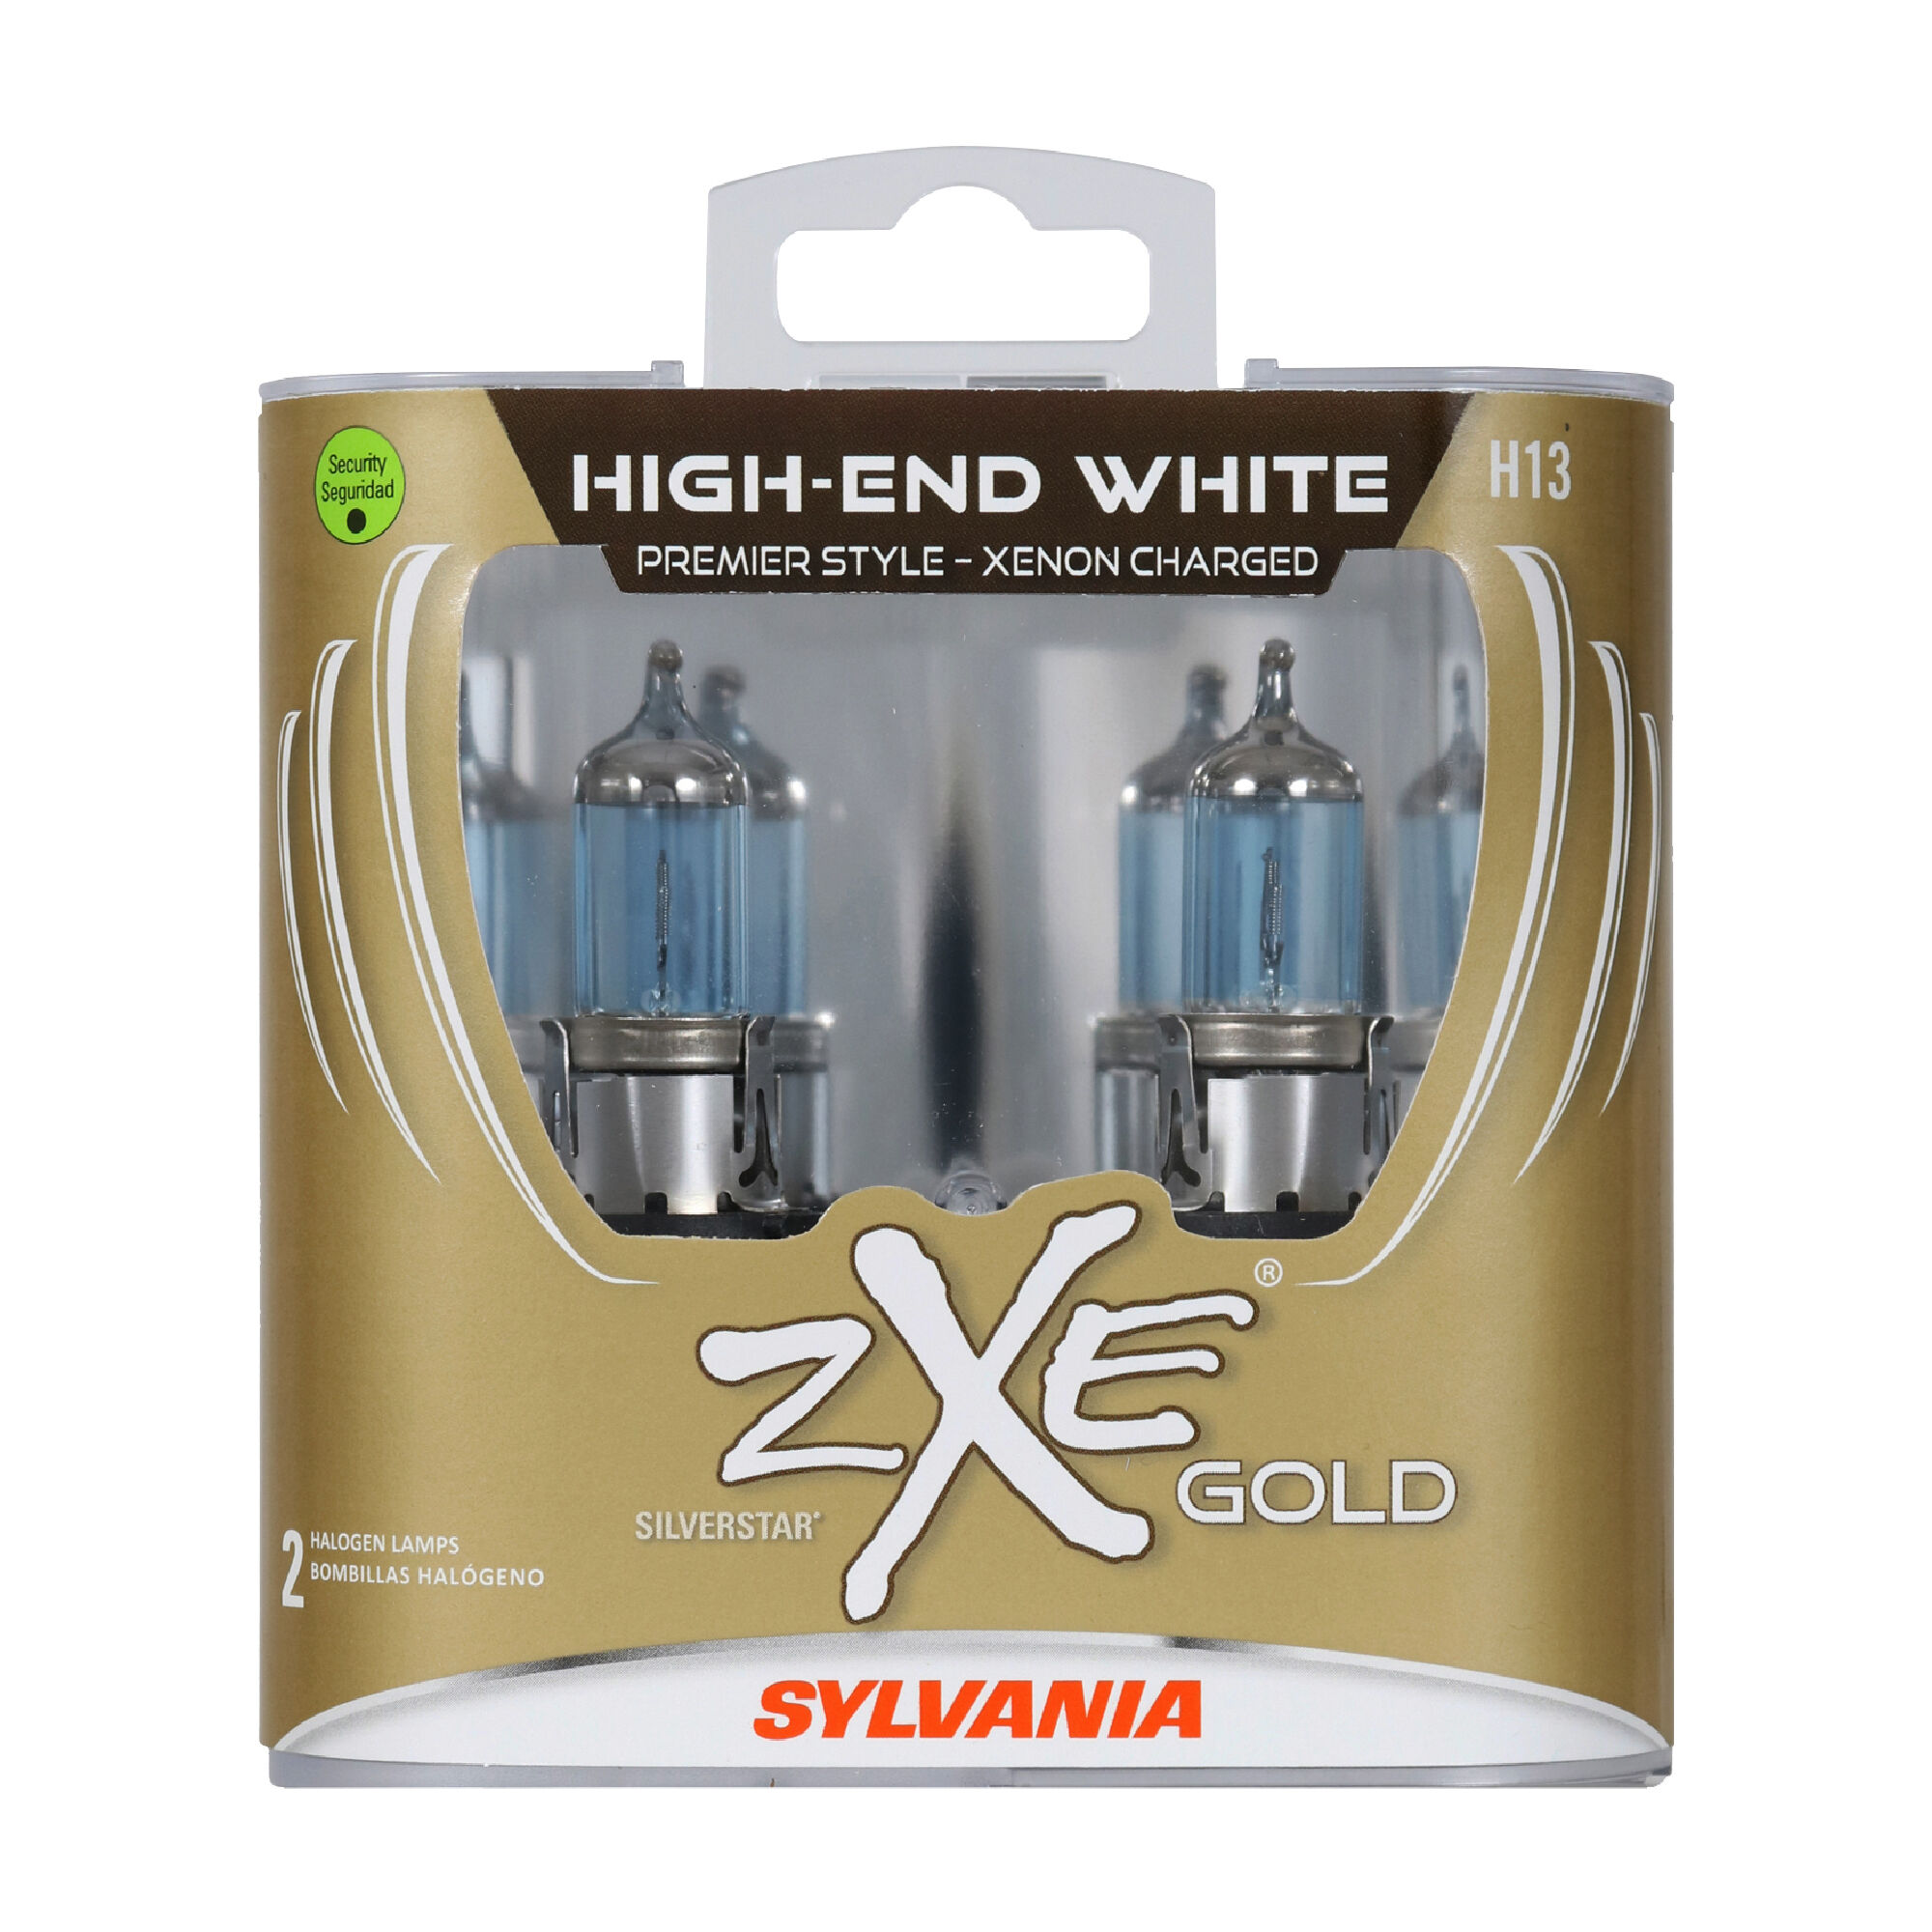 SYLVANIA H13 SilverStar zXe Gold Halogen Headlight Bulb, 2 Pack